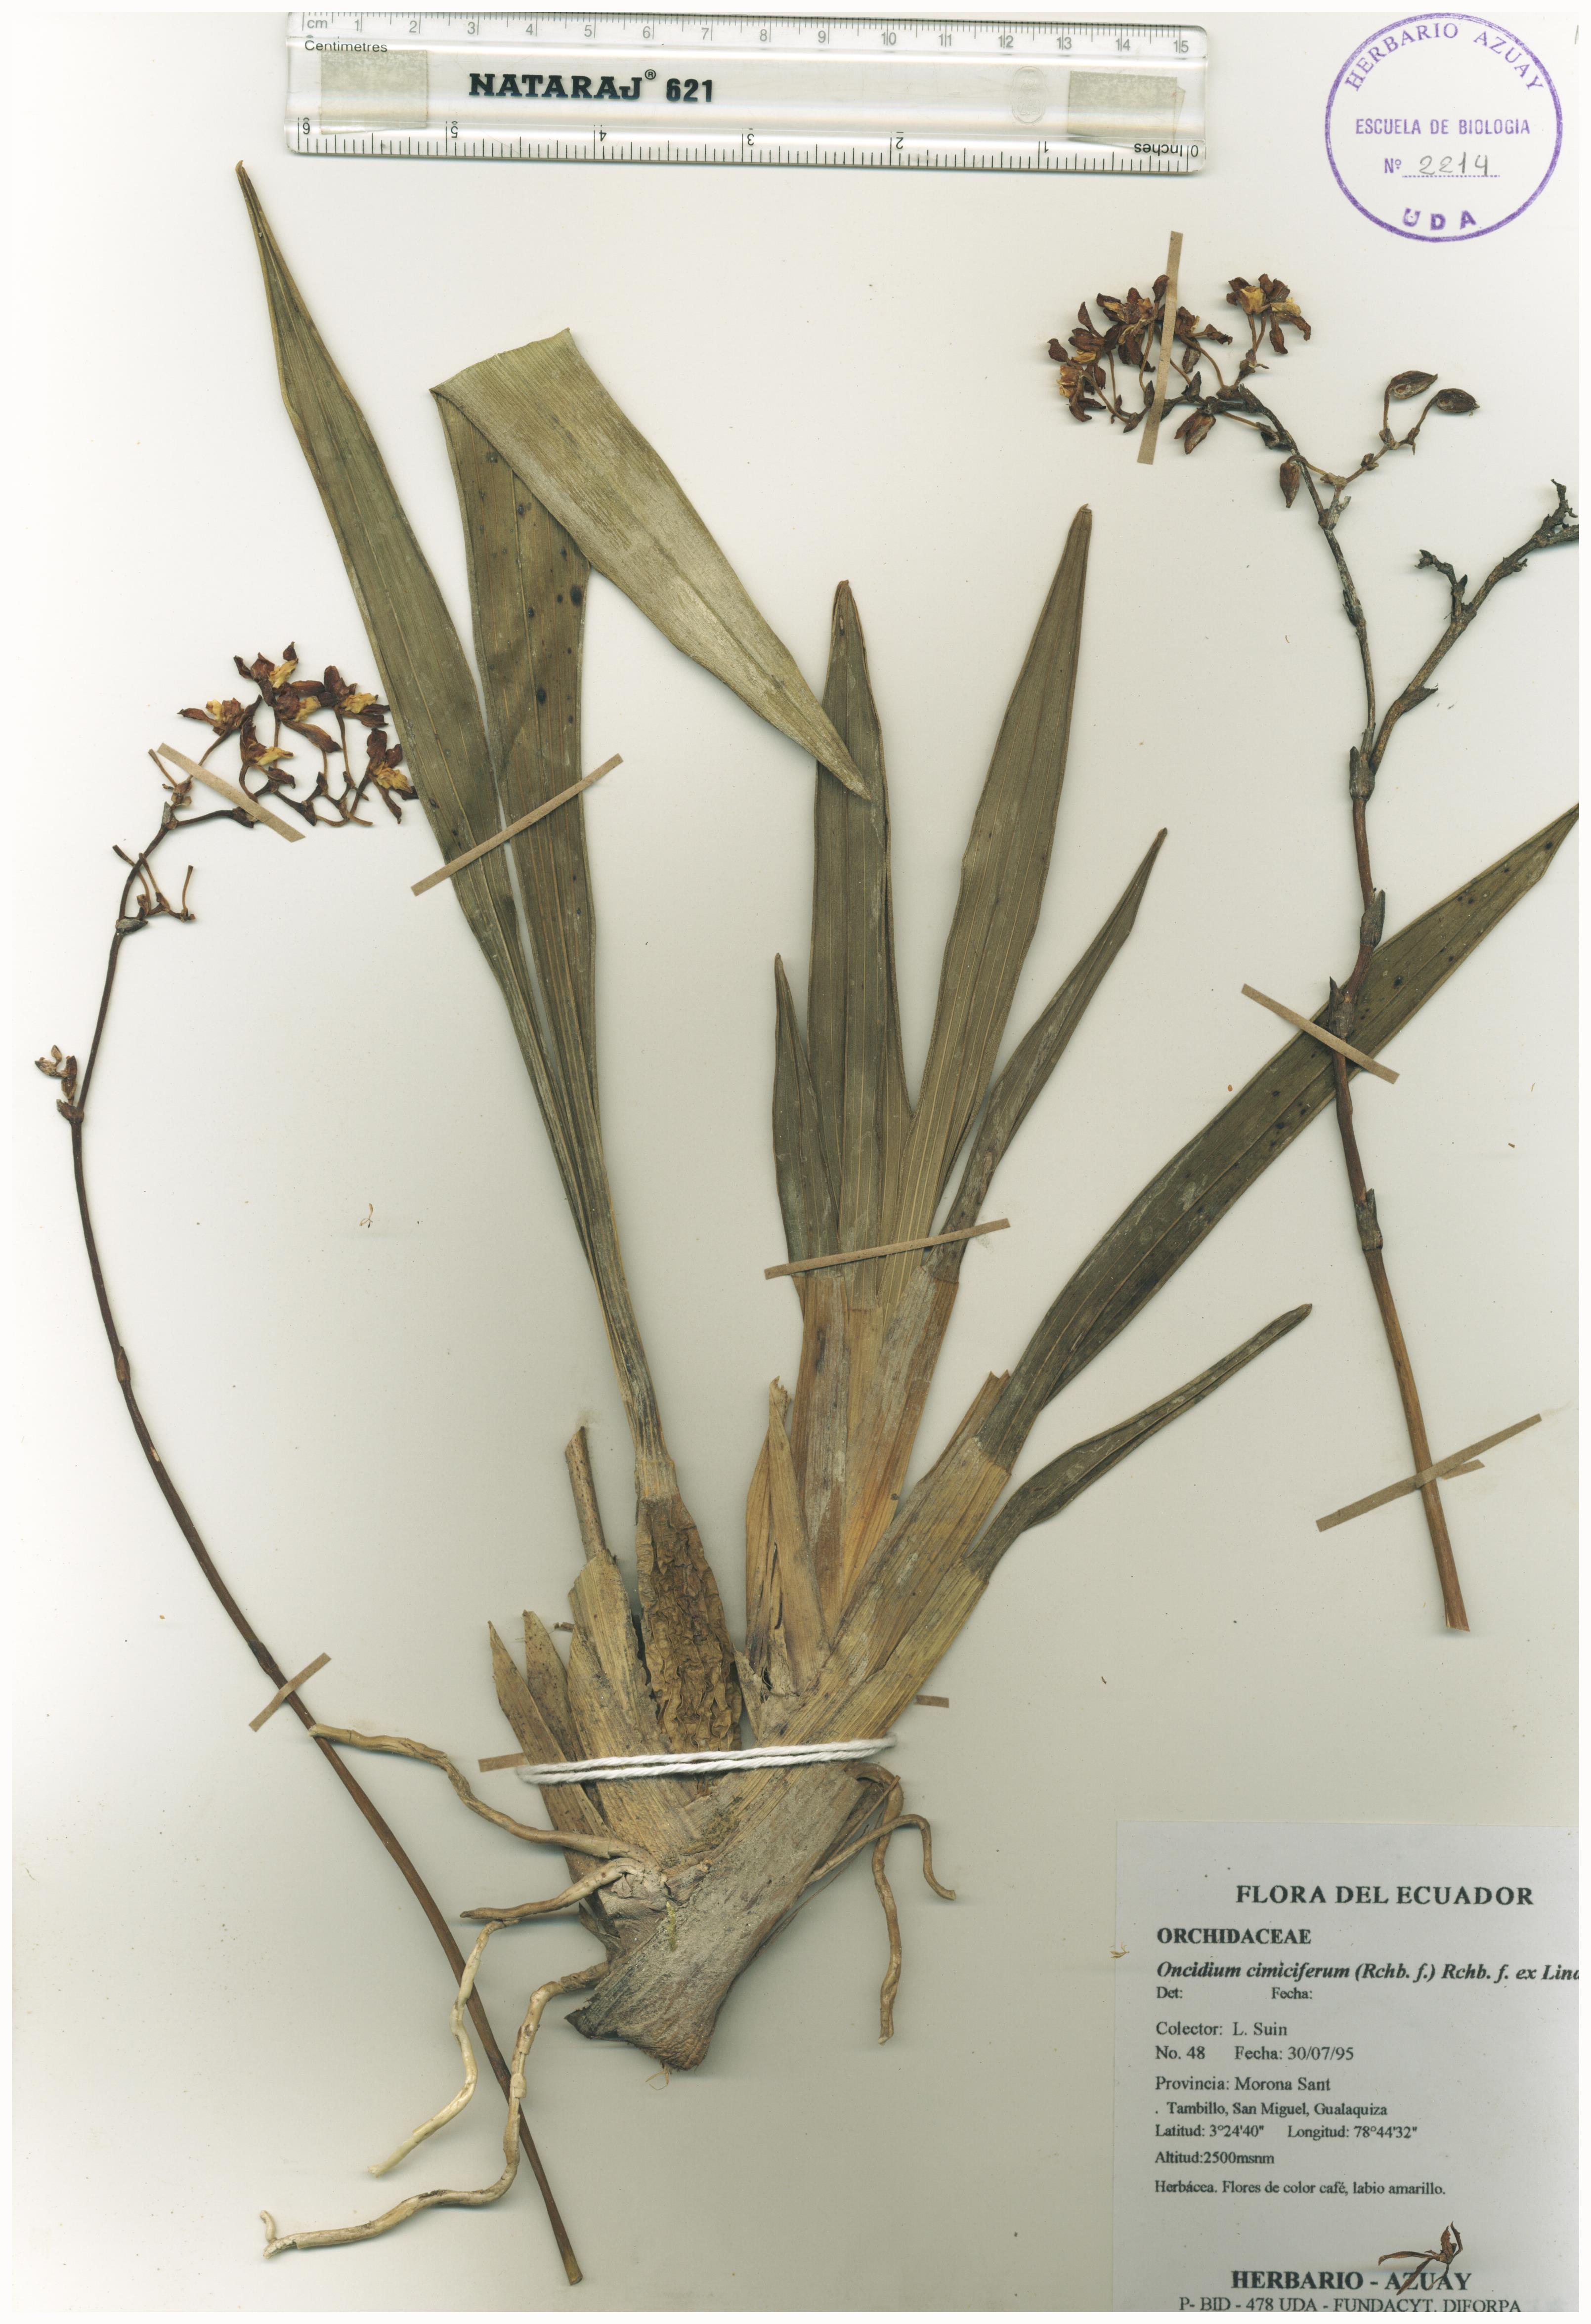 Oncidium cimiciferum (Rchb. f.) Rchb. f. ex Lindl.